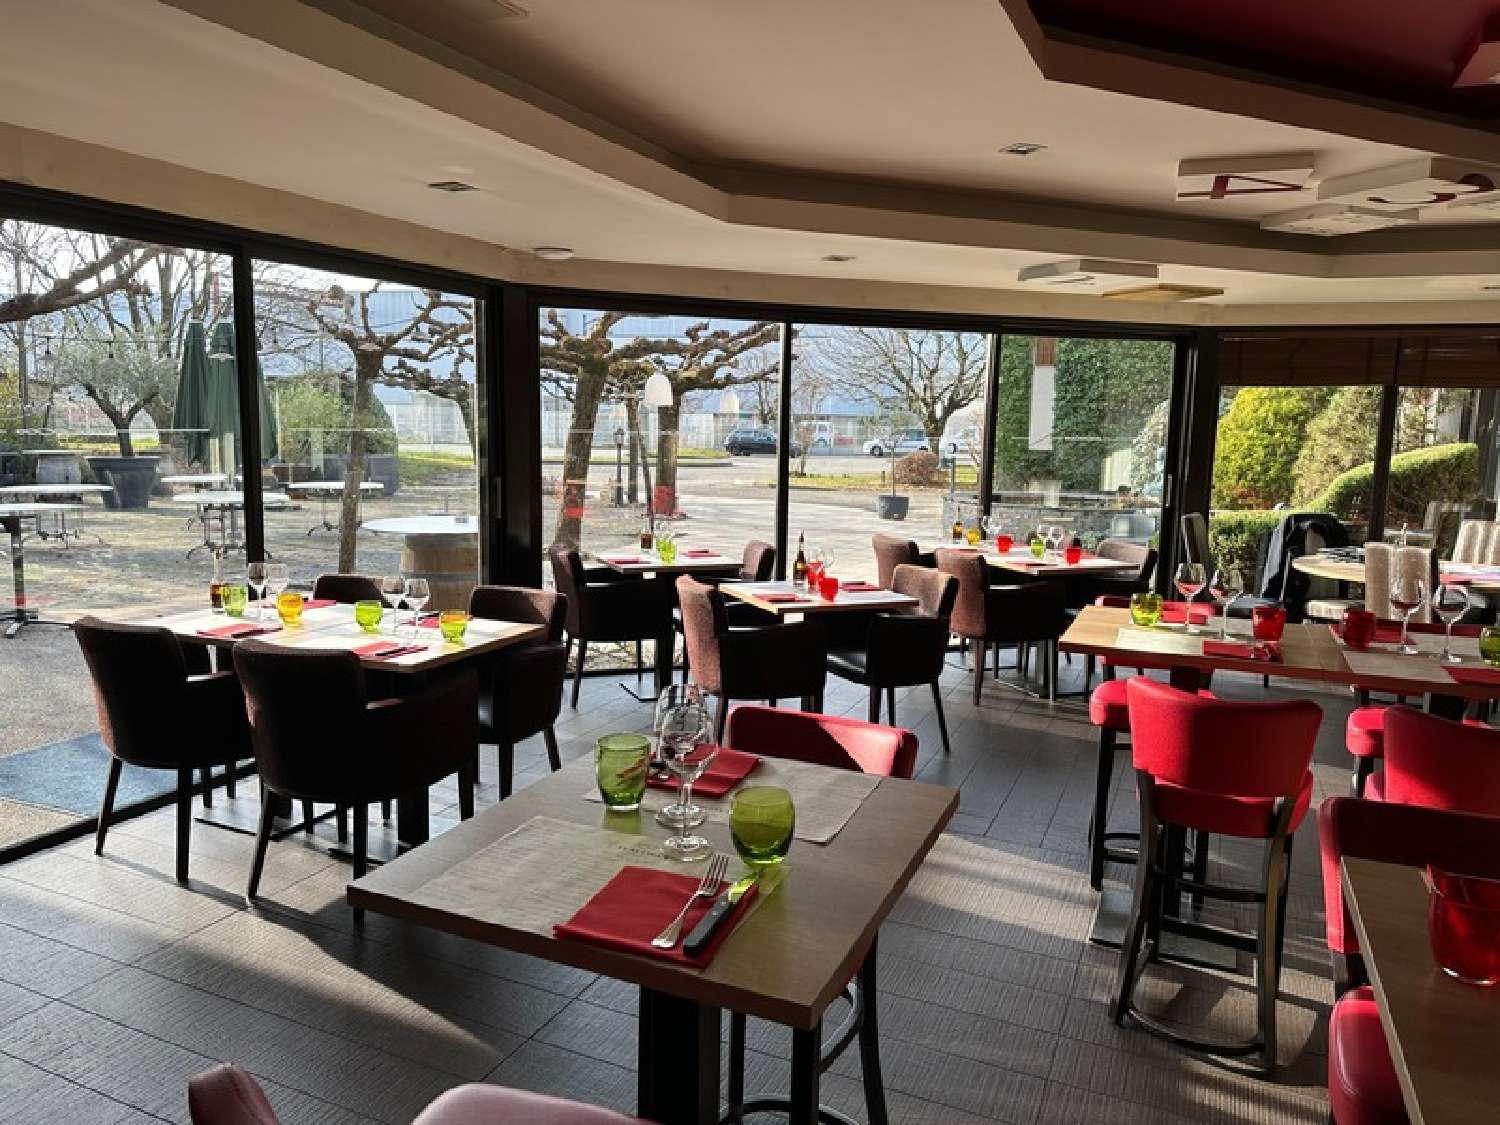 Chambéry Savoie restaurant foto 6832832